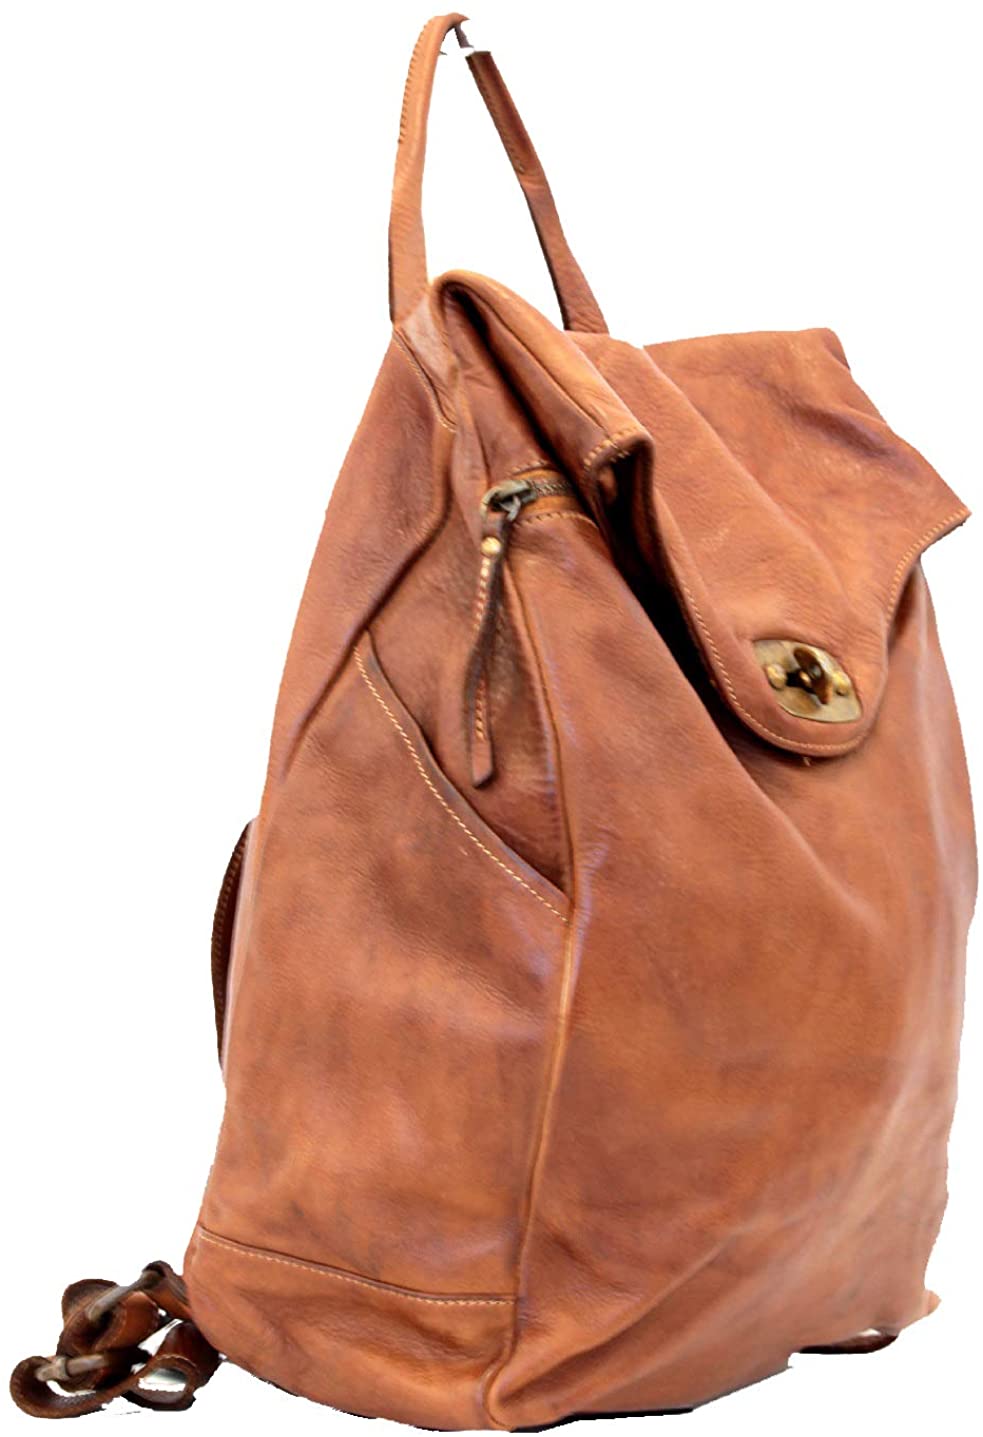 BZNA Bag Rinalto coganc braun Italy Rucksack Backpacker Designer Tasche Handtasche Schultertasche Leder Damen Neu